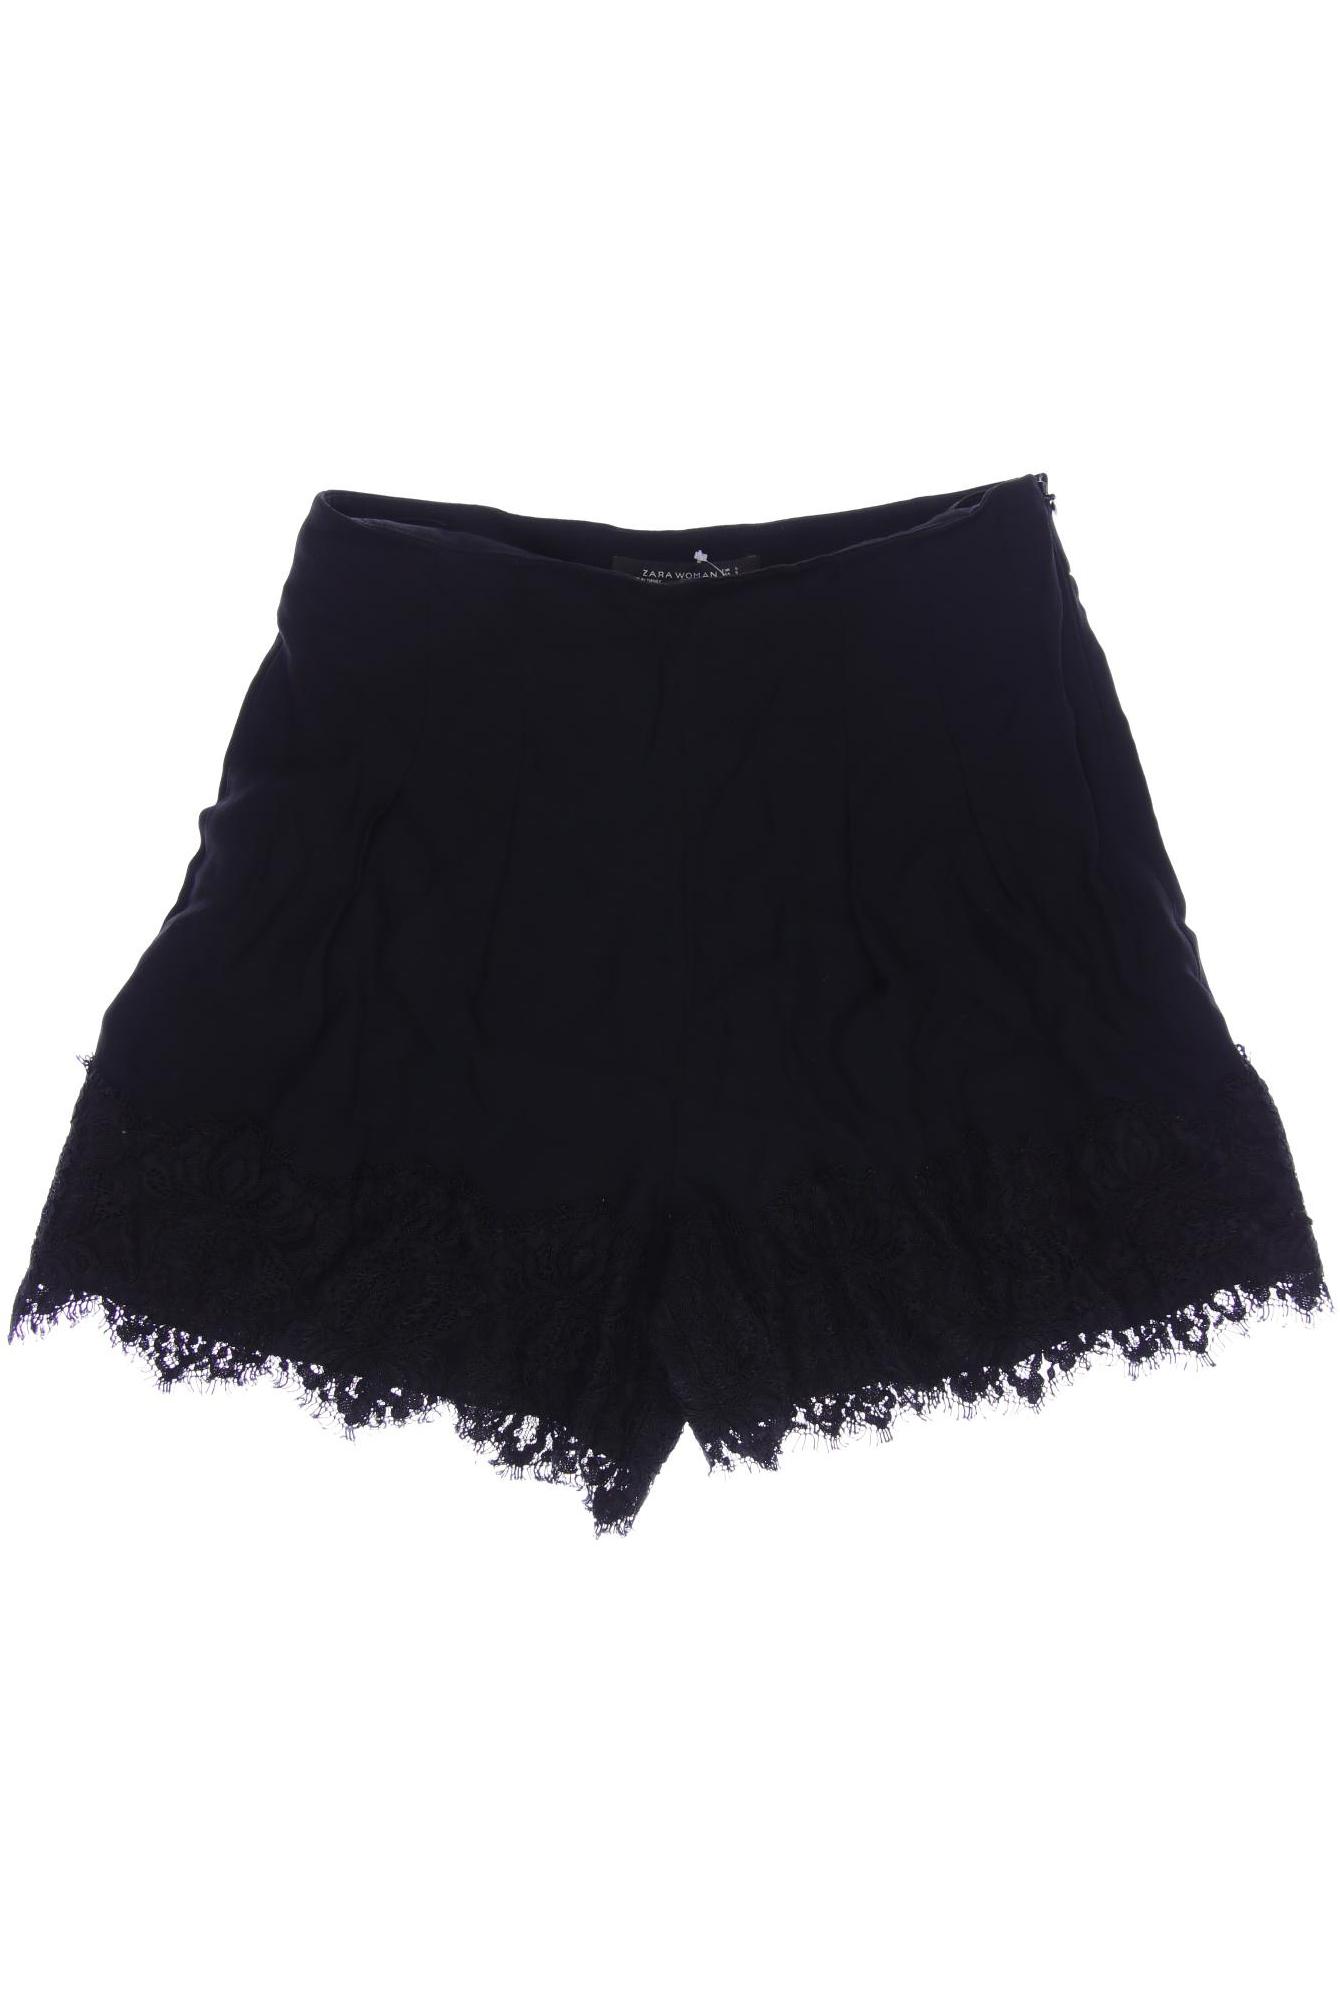 Zara Damen Shorts, schwarz, Gr. 36 von ZARA